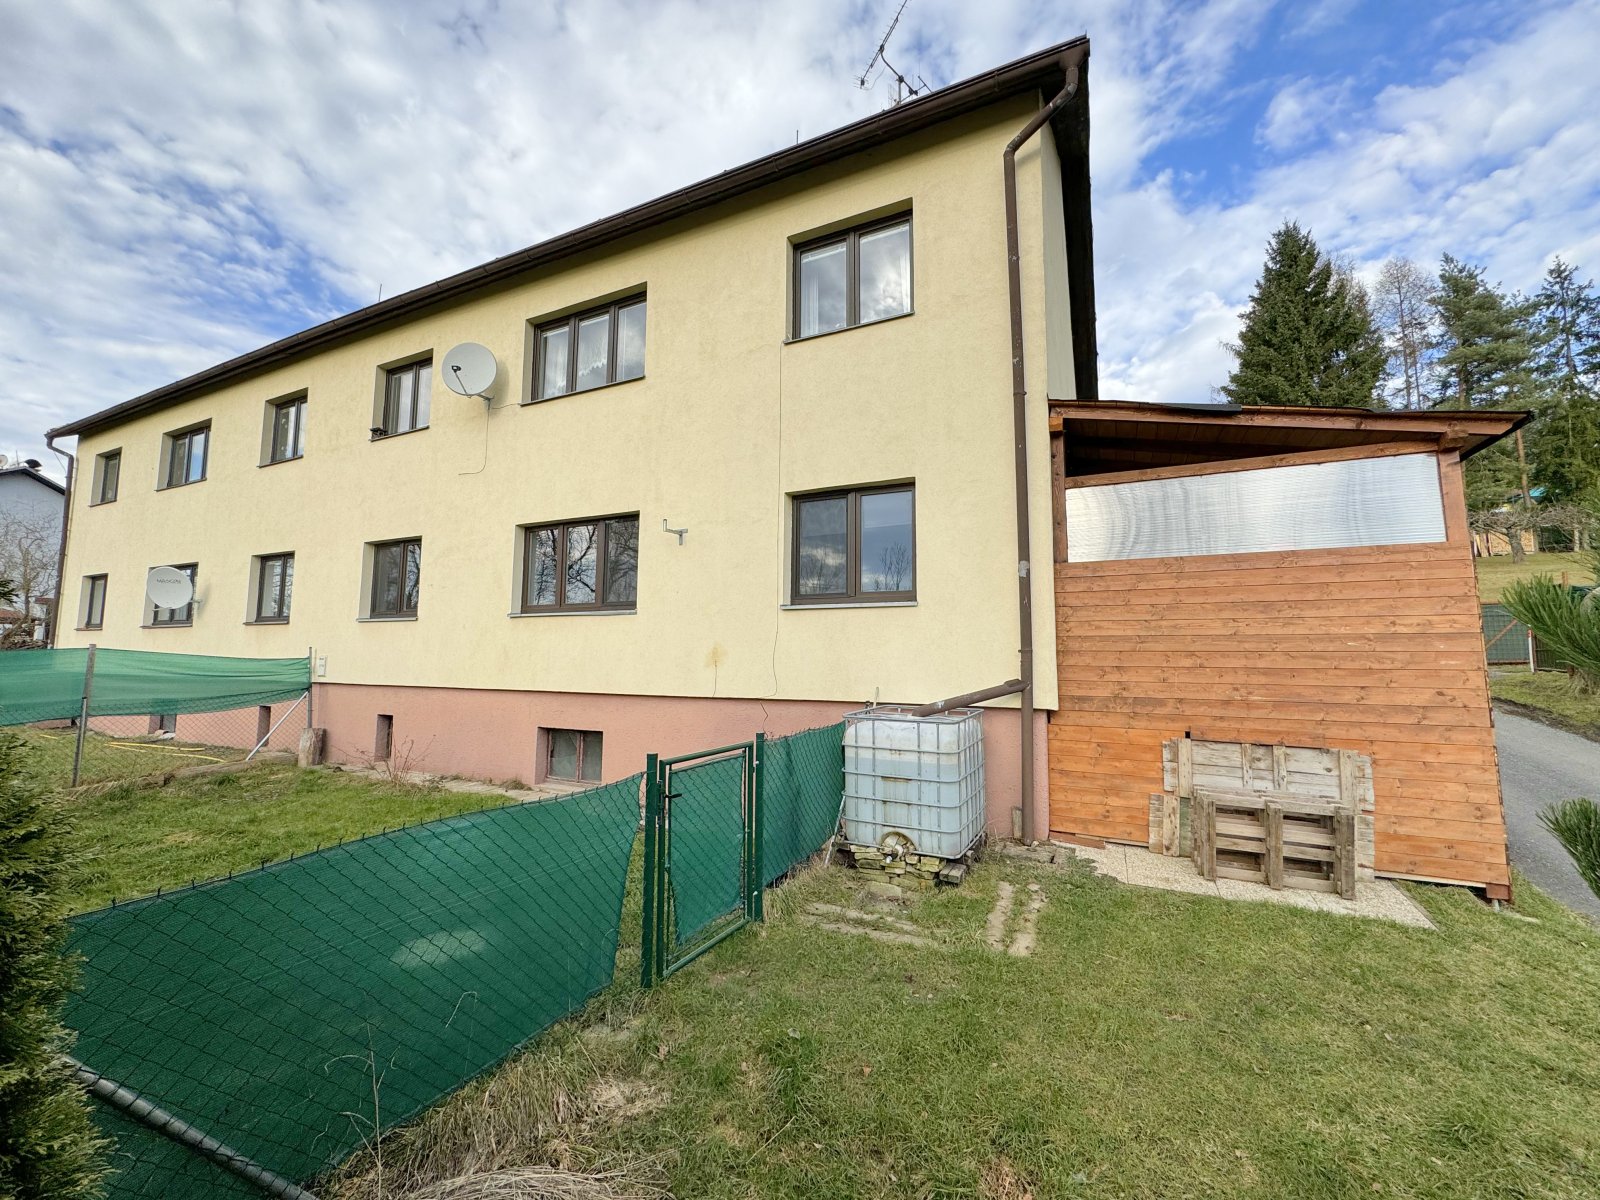 Rezervace: Zděný byt 3+1, OV, zahrada a zastřešená terasa, Malé Svatoňovice, okres Trutnov